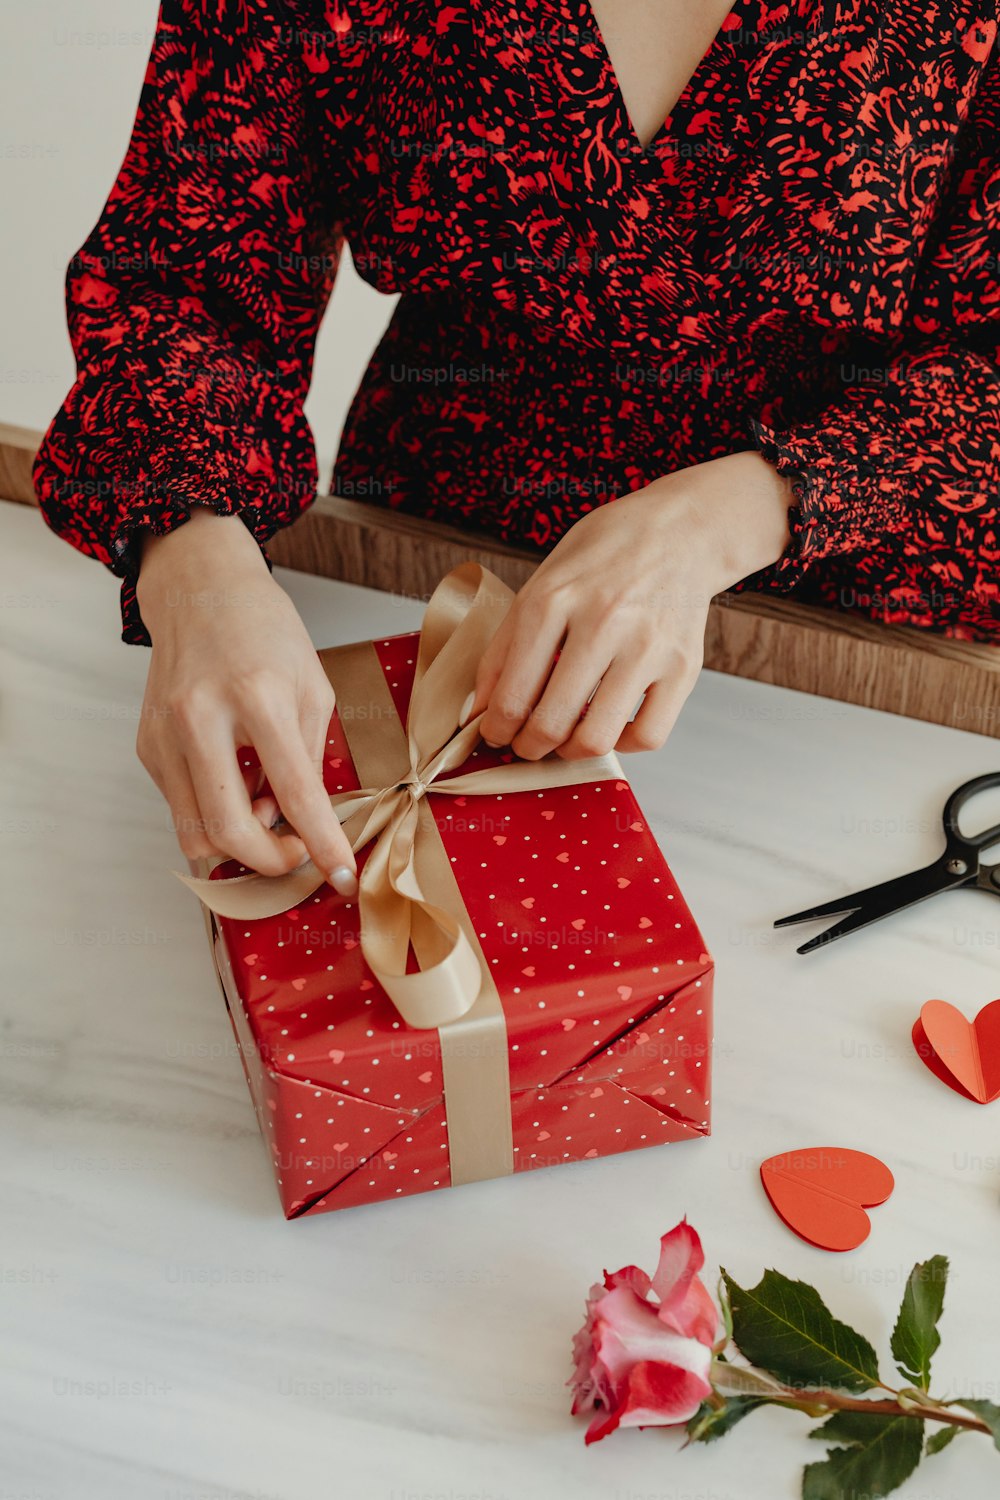 Eine Frau verpackt ein Geschenk mit einem braunen Band